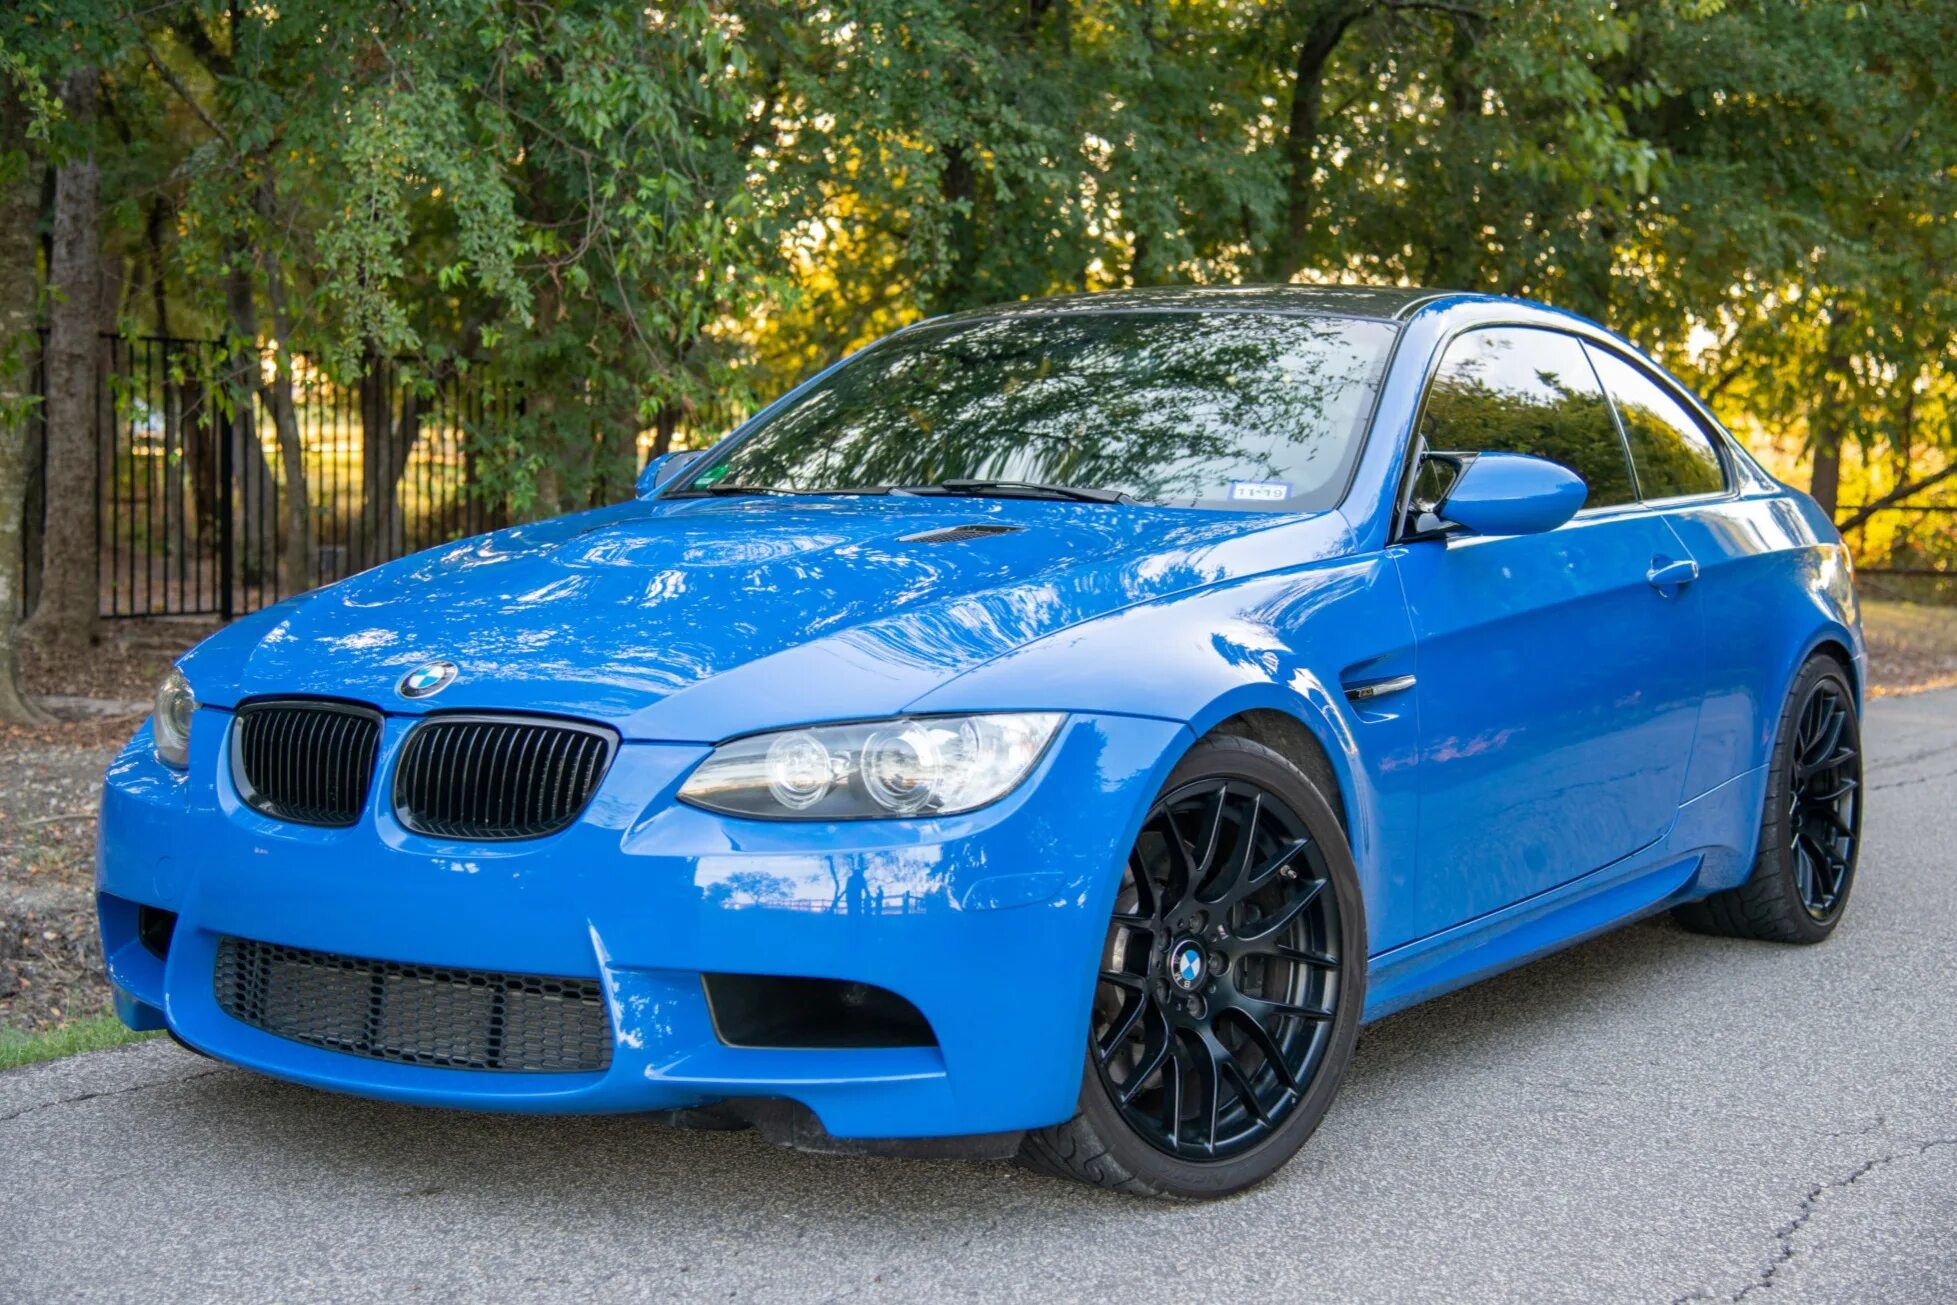 BMW e92 синяя. BMW m3 e90 Blue. BMW e92 Coupe синяя. BMW m3 e92 Blue.